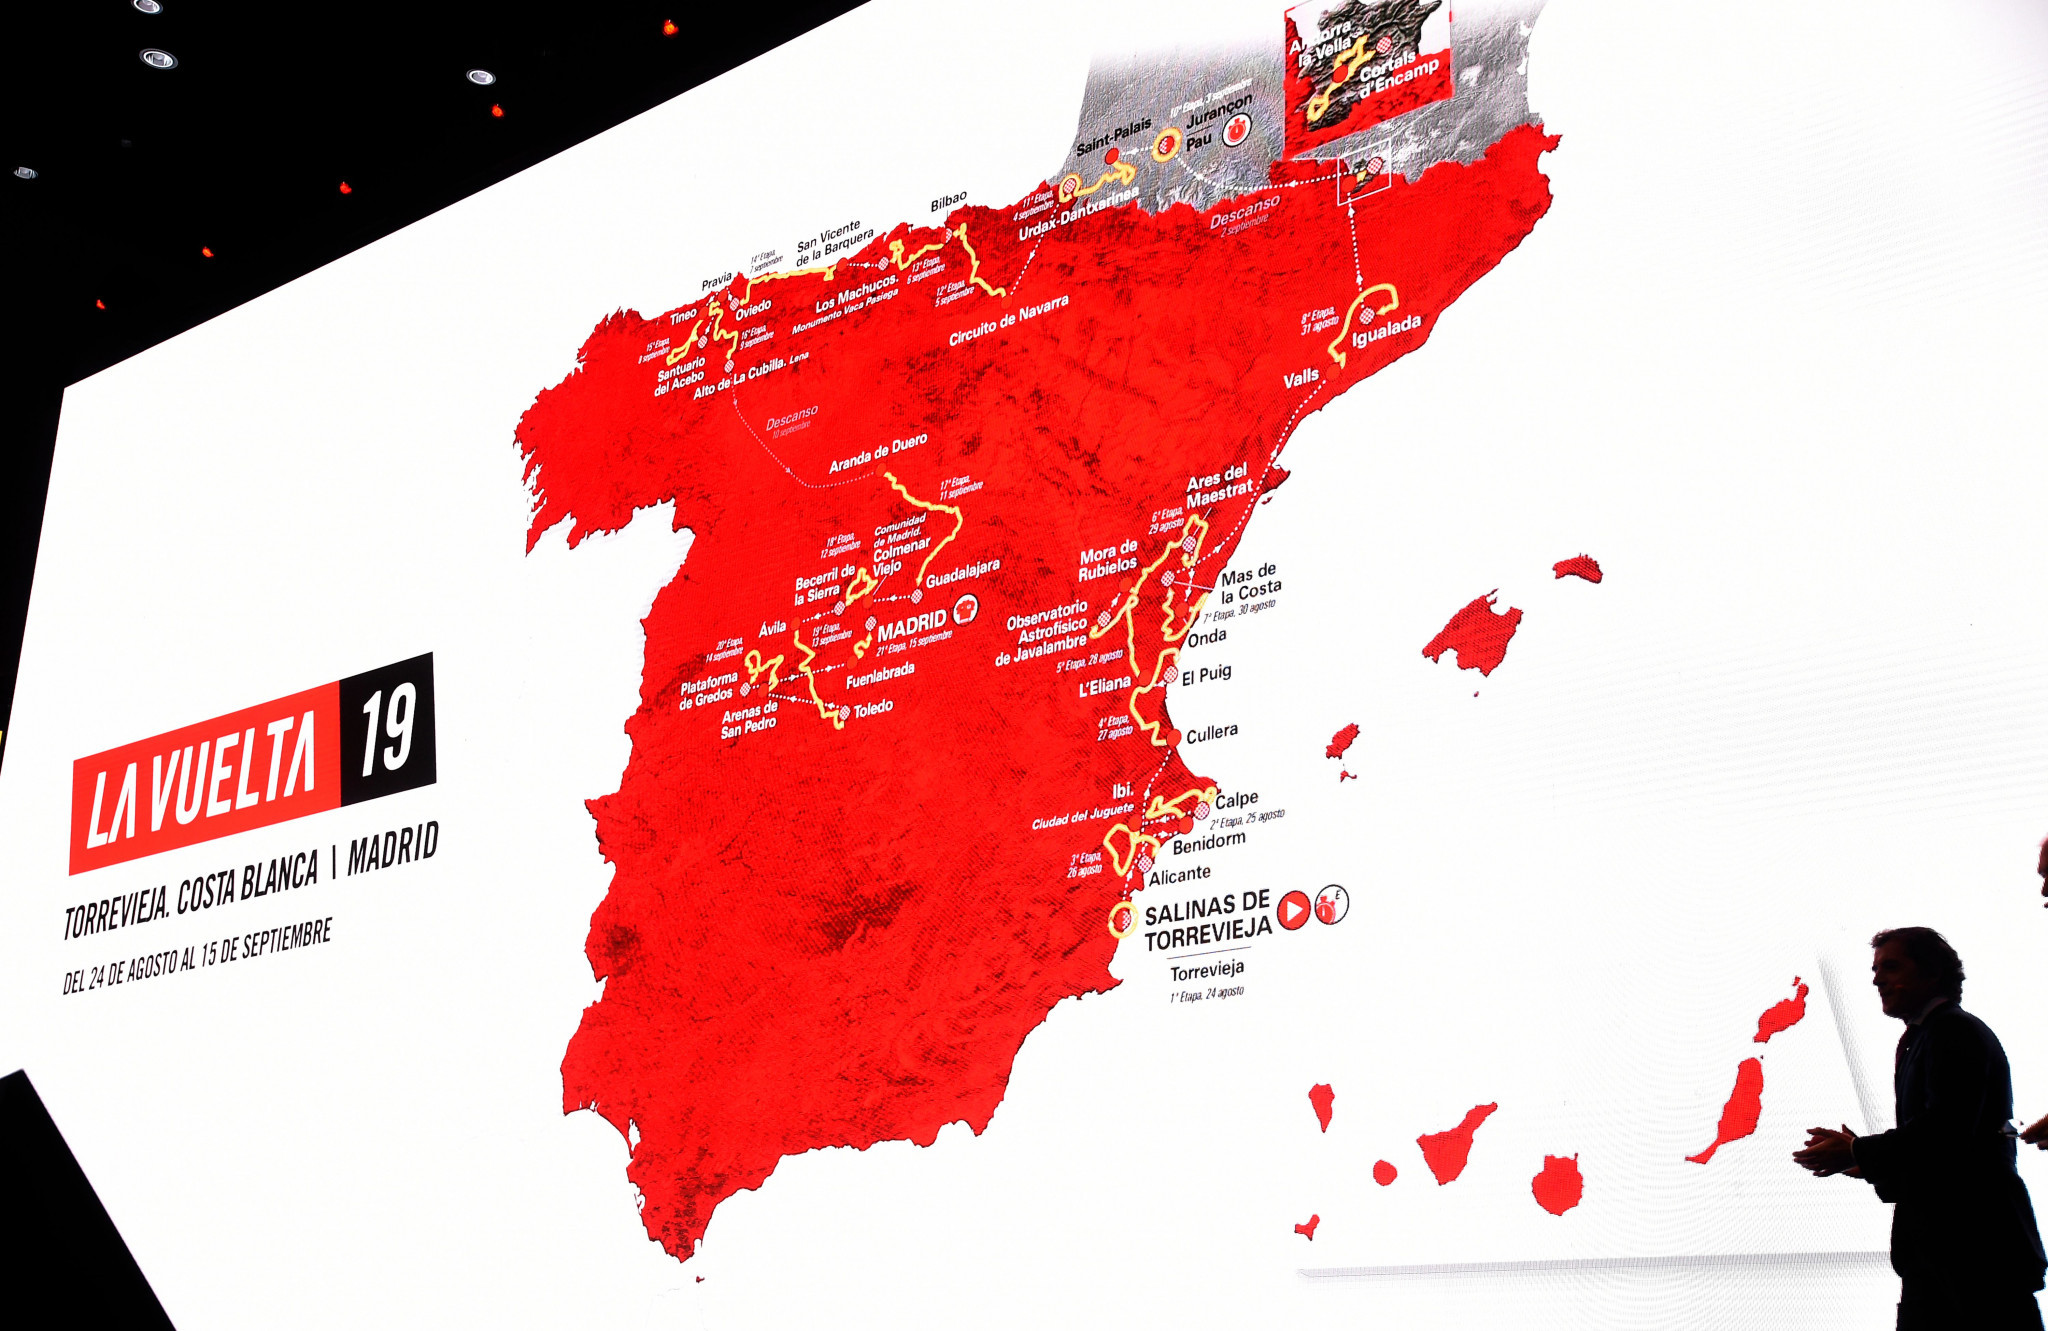 Route confirmed for 2019 La Vuelta a España